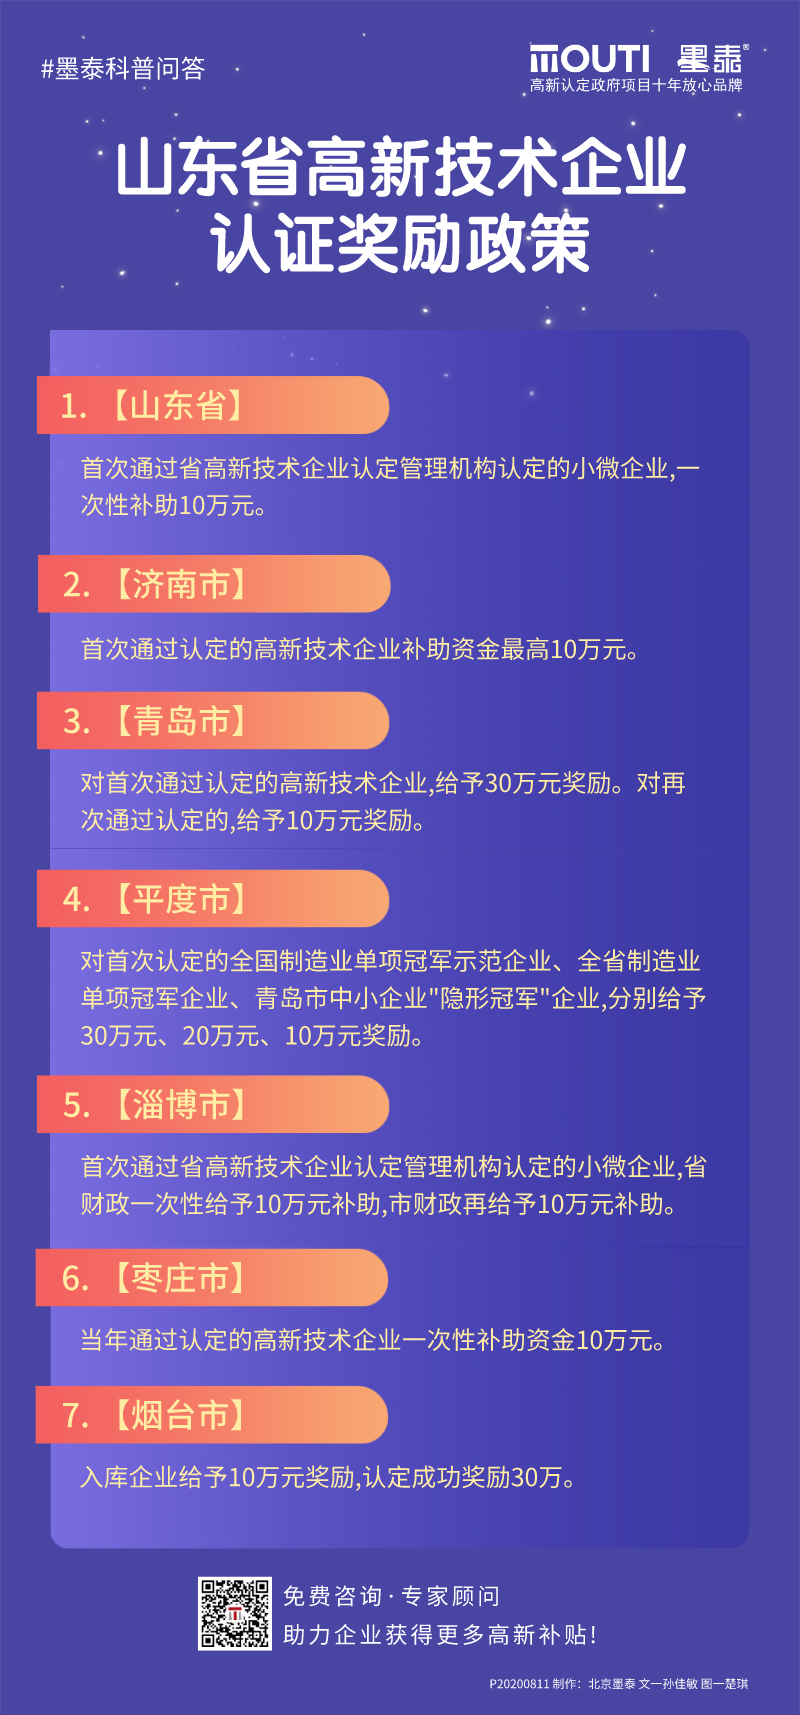 20200811山东省高新企业认证奖励政策.png